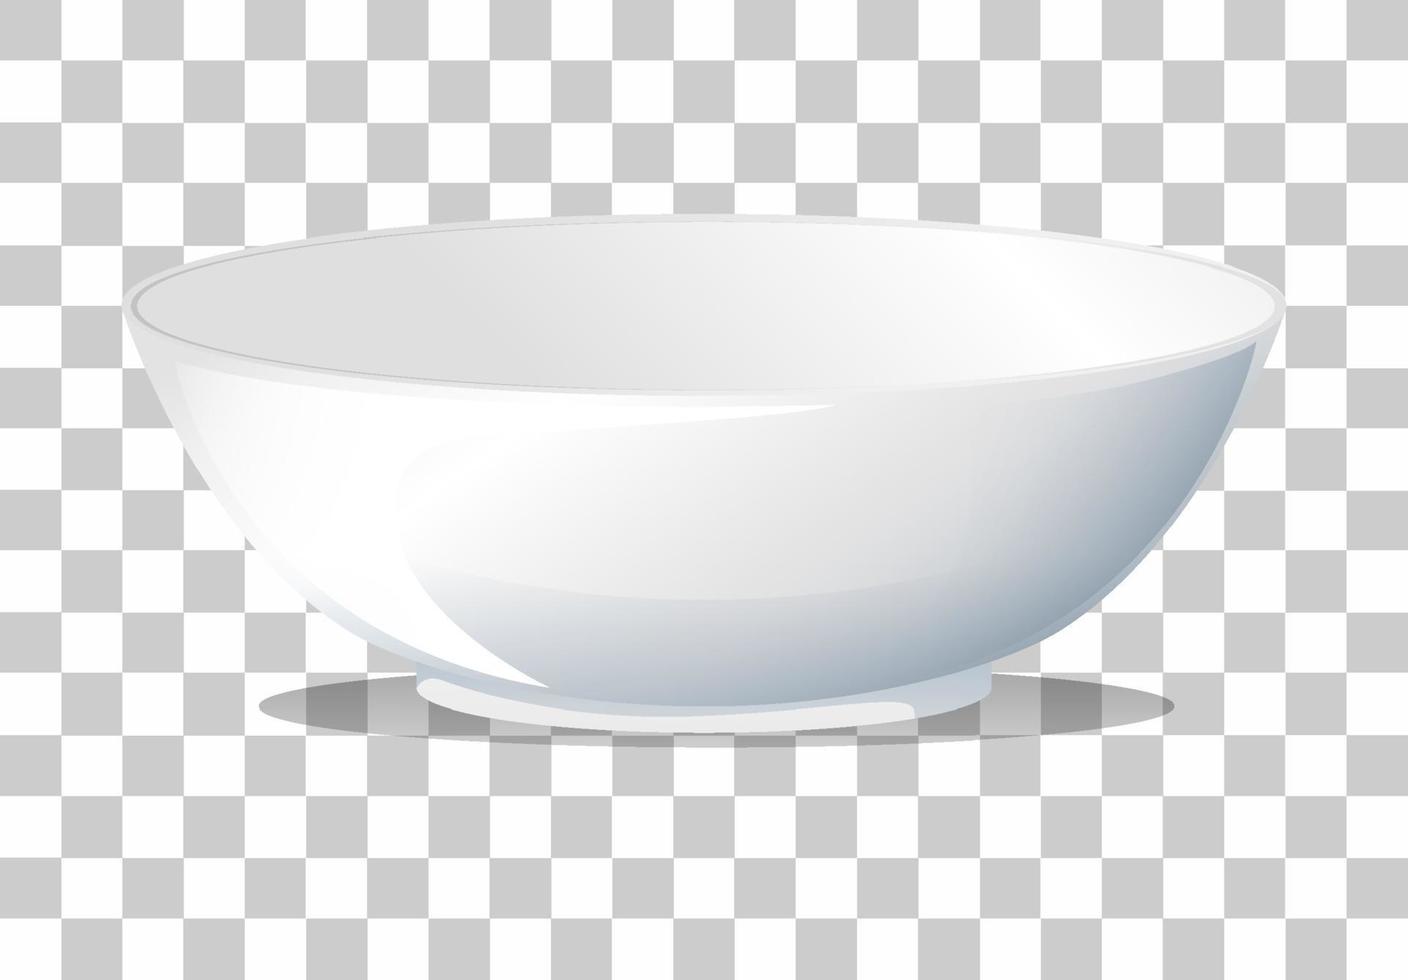 White plain bowl on grid background vector